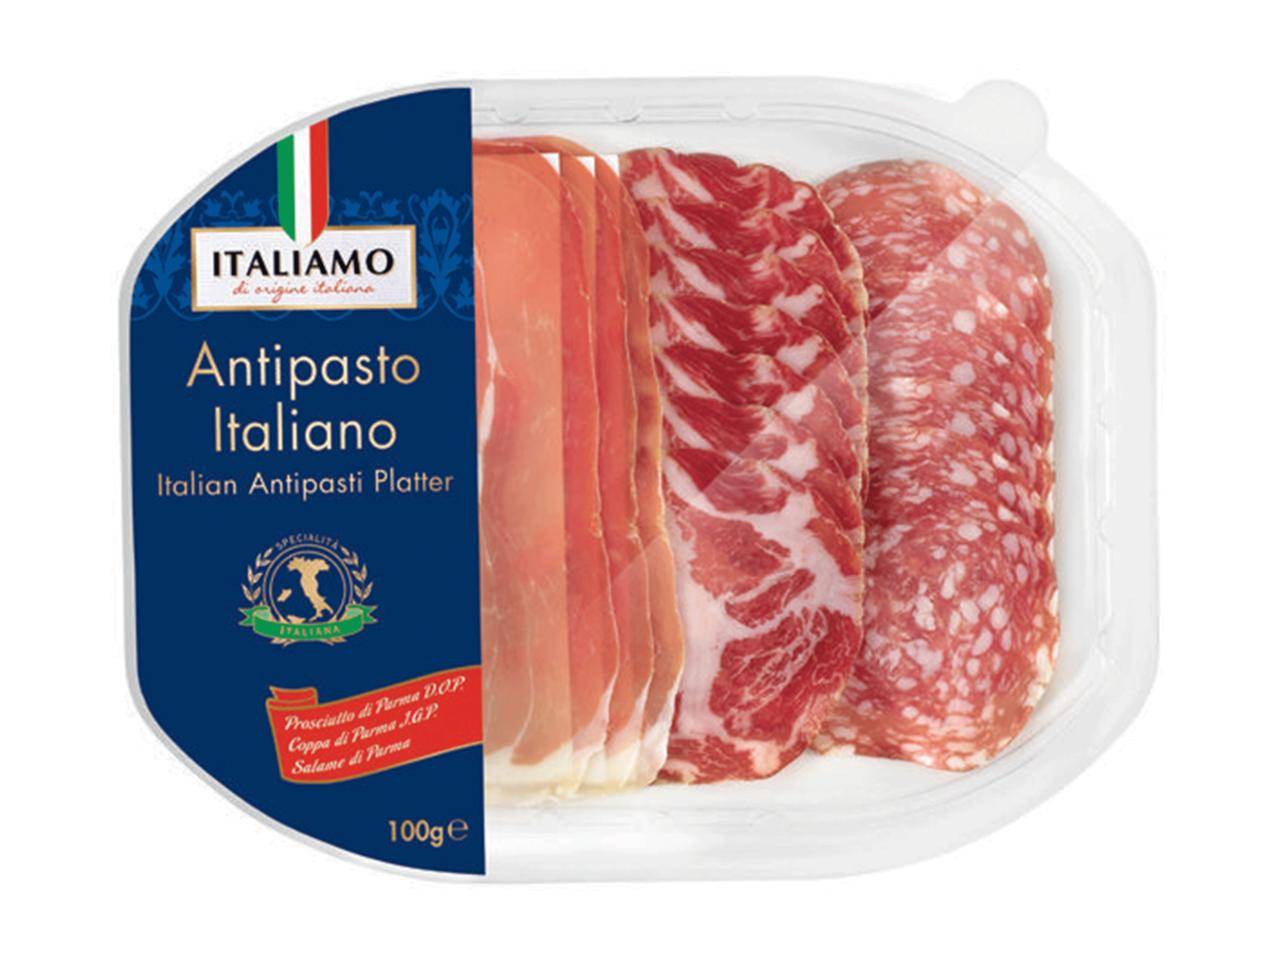 ITALIAMO Prosciutto di San Daniele/Italian Antipasti Platter